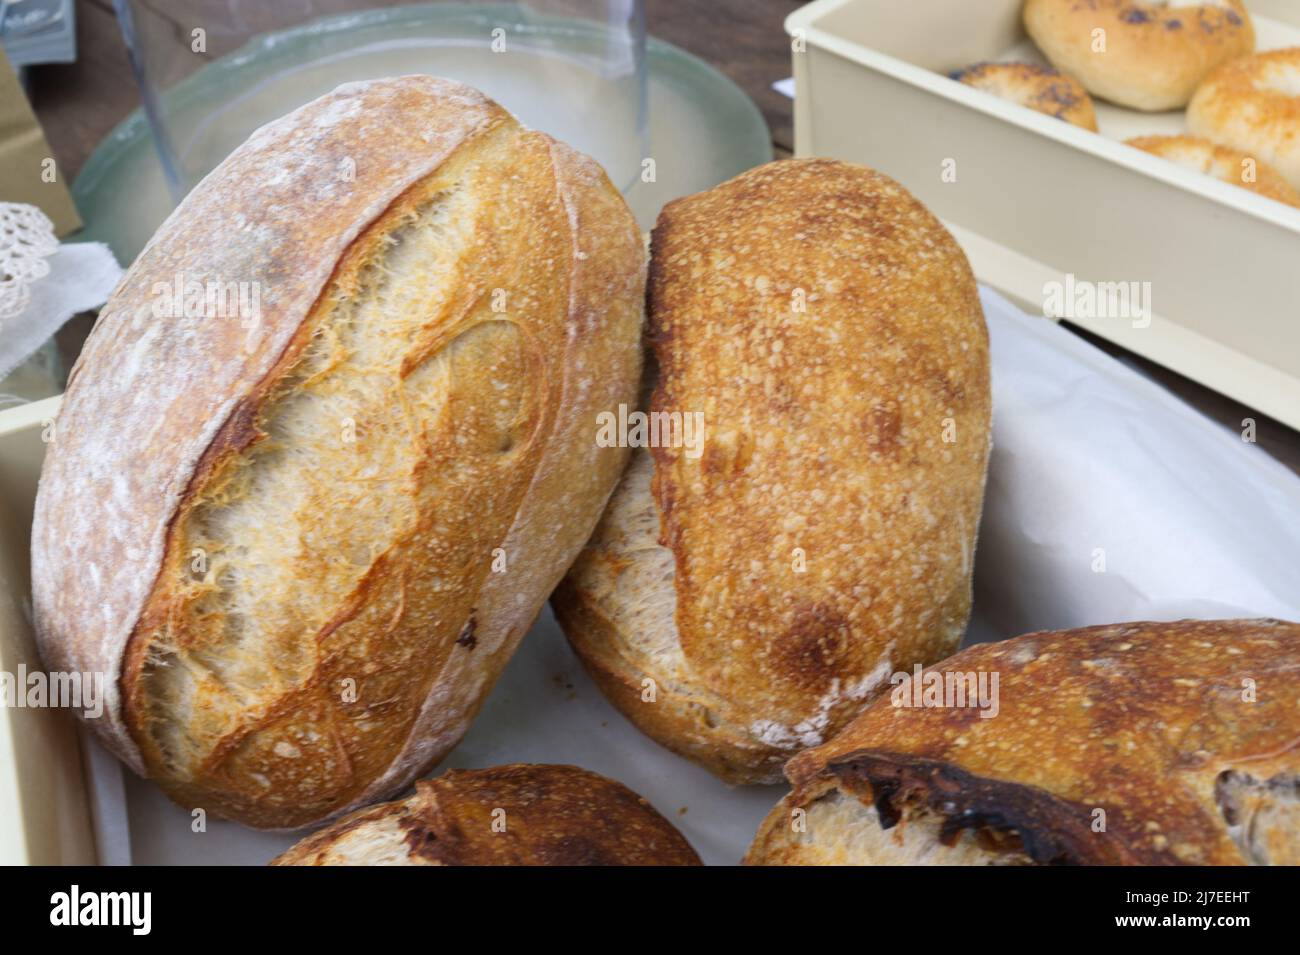 Gros plan sur le pain. Pain de levain fraîchement cuit avec une croûte dorée . Concept boulangerie , texture pain levain Banque D'Images